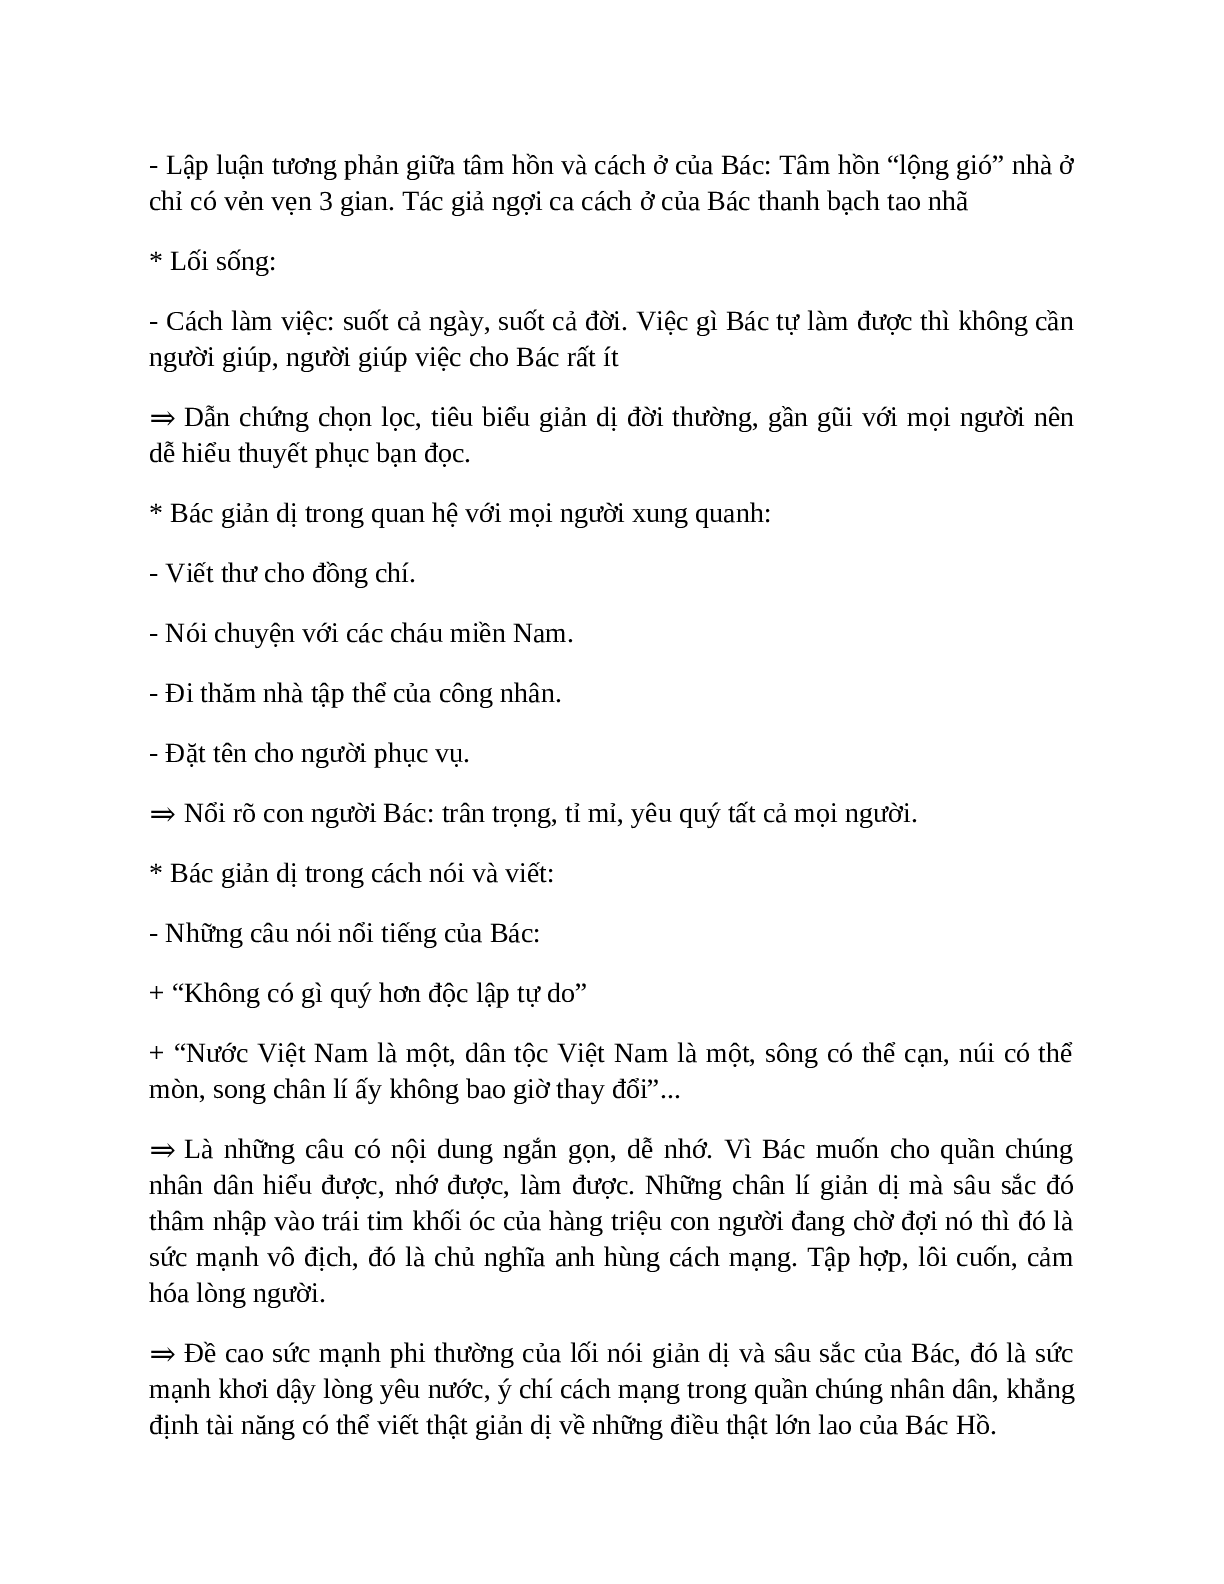 Sơ đồ tư duy bài Đức tính giản dị của Bác Hồ dễ nhớ, ngắn nhất - Ngữ văn lớp 7 (trang 4)